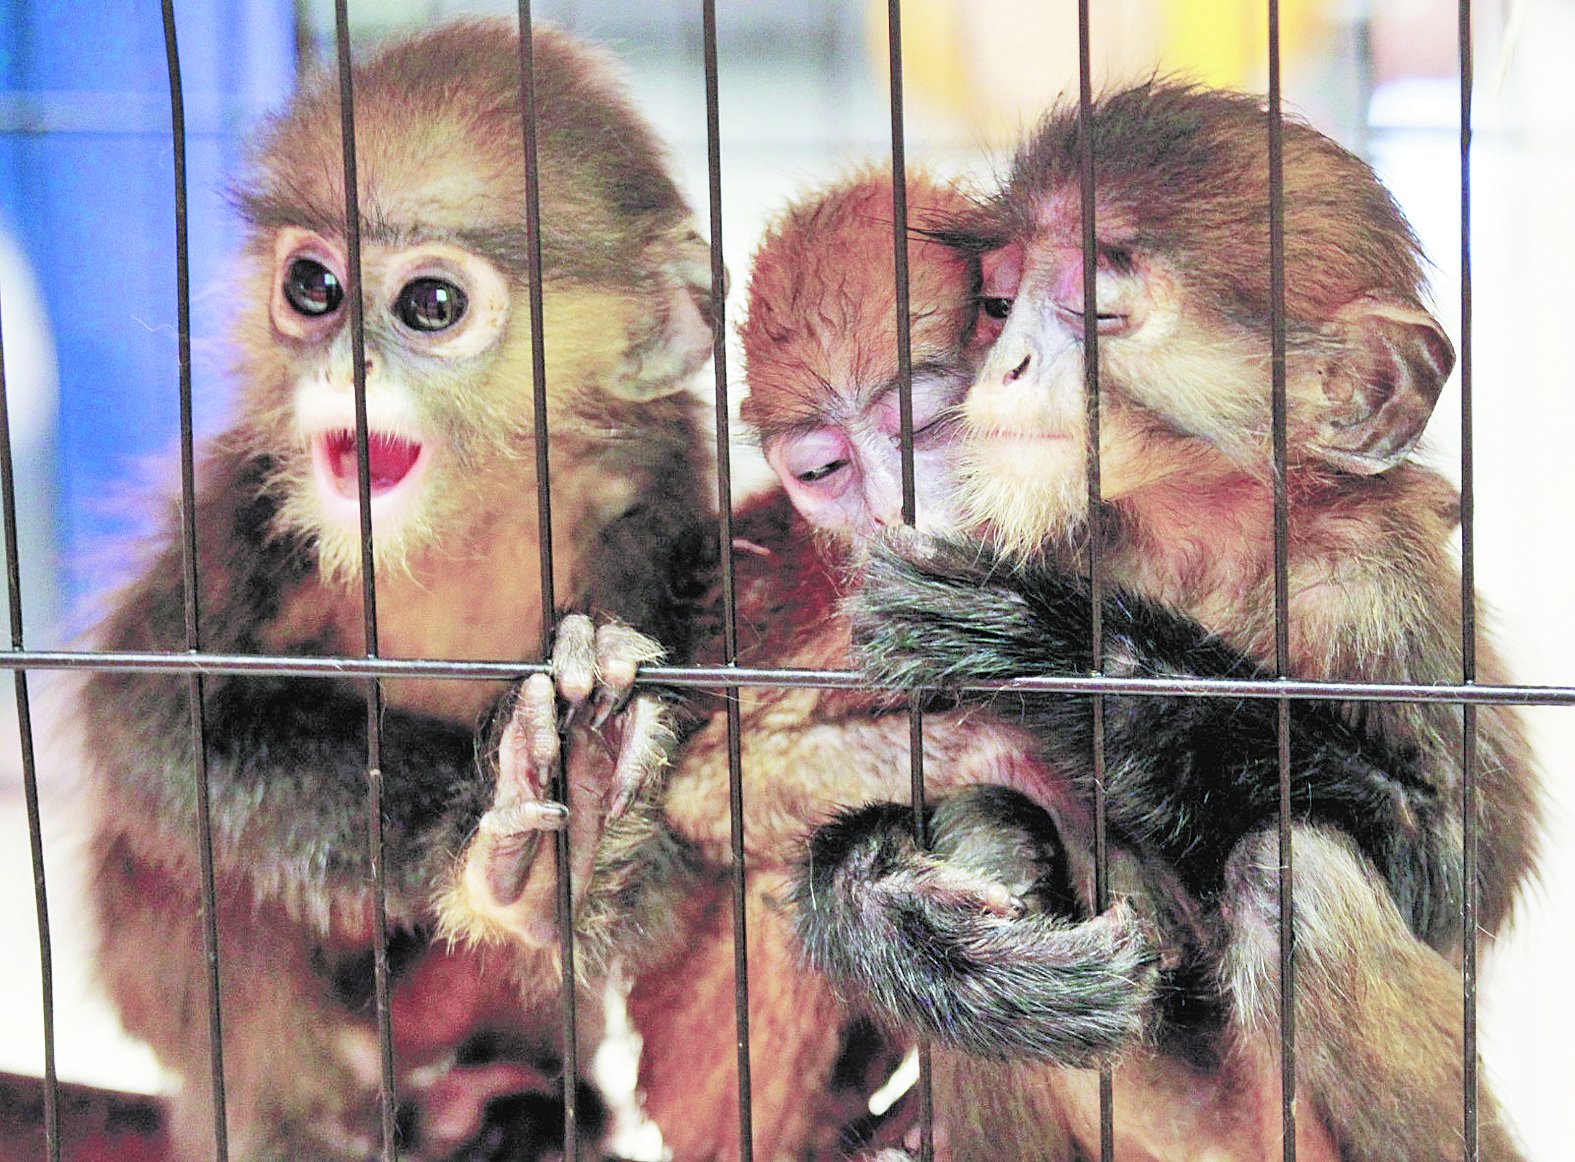 3只叶猴挤在笼子中，它们无辜被捕抓险遭贩卖。